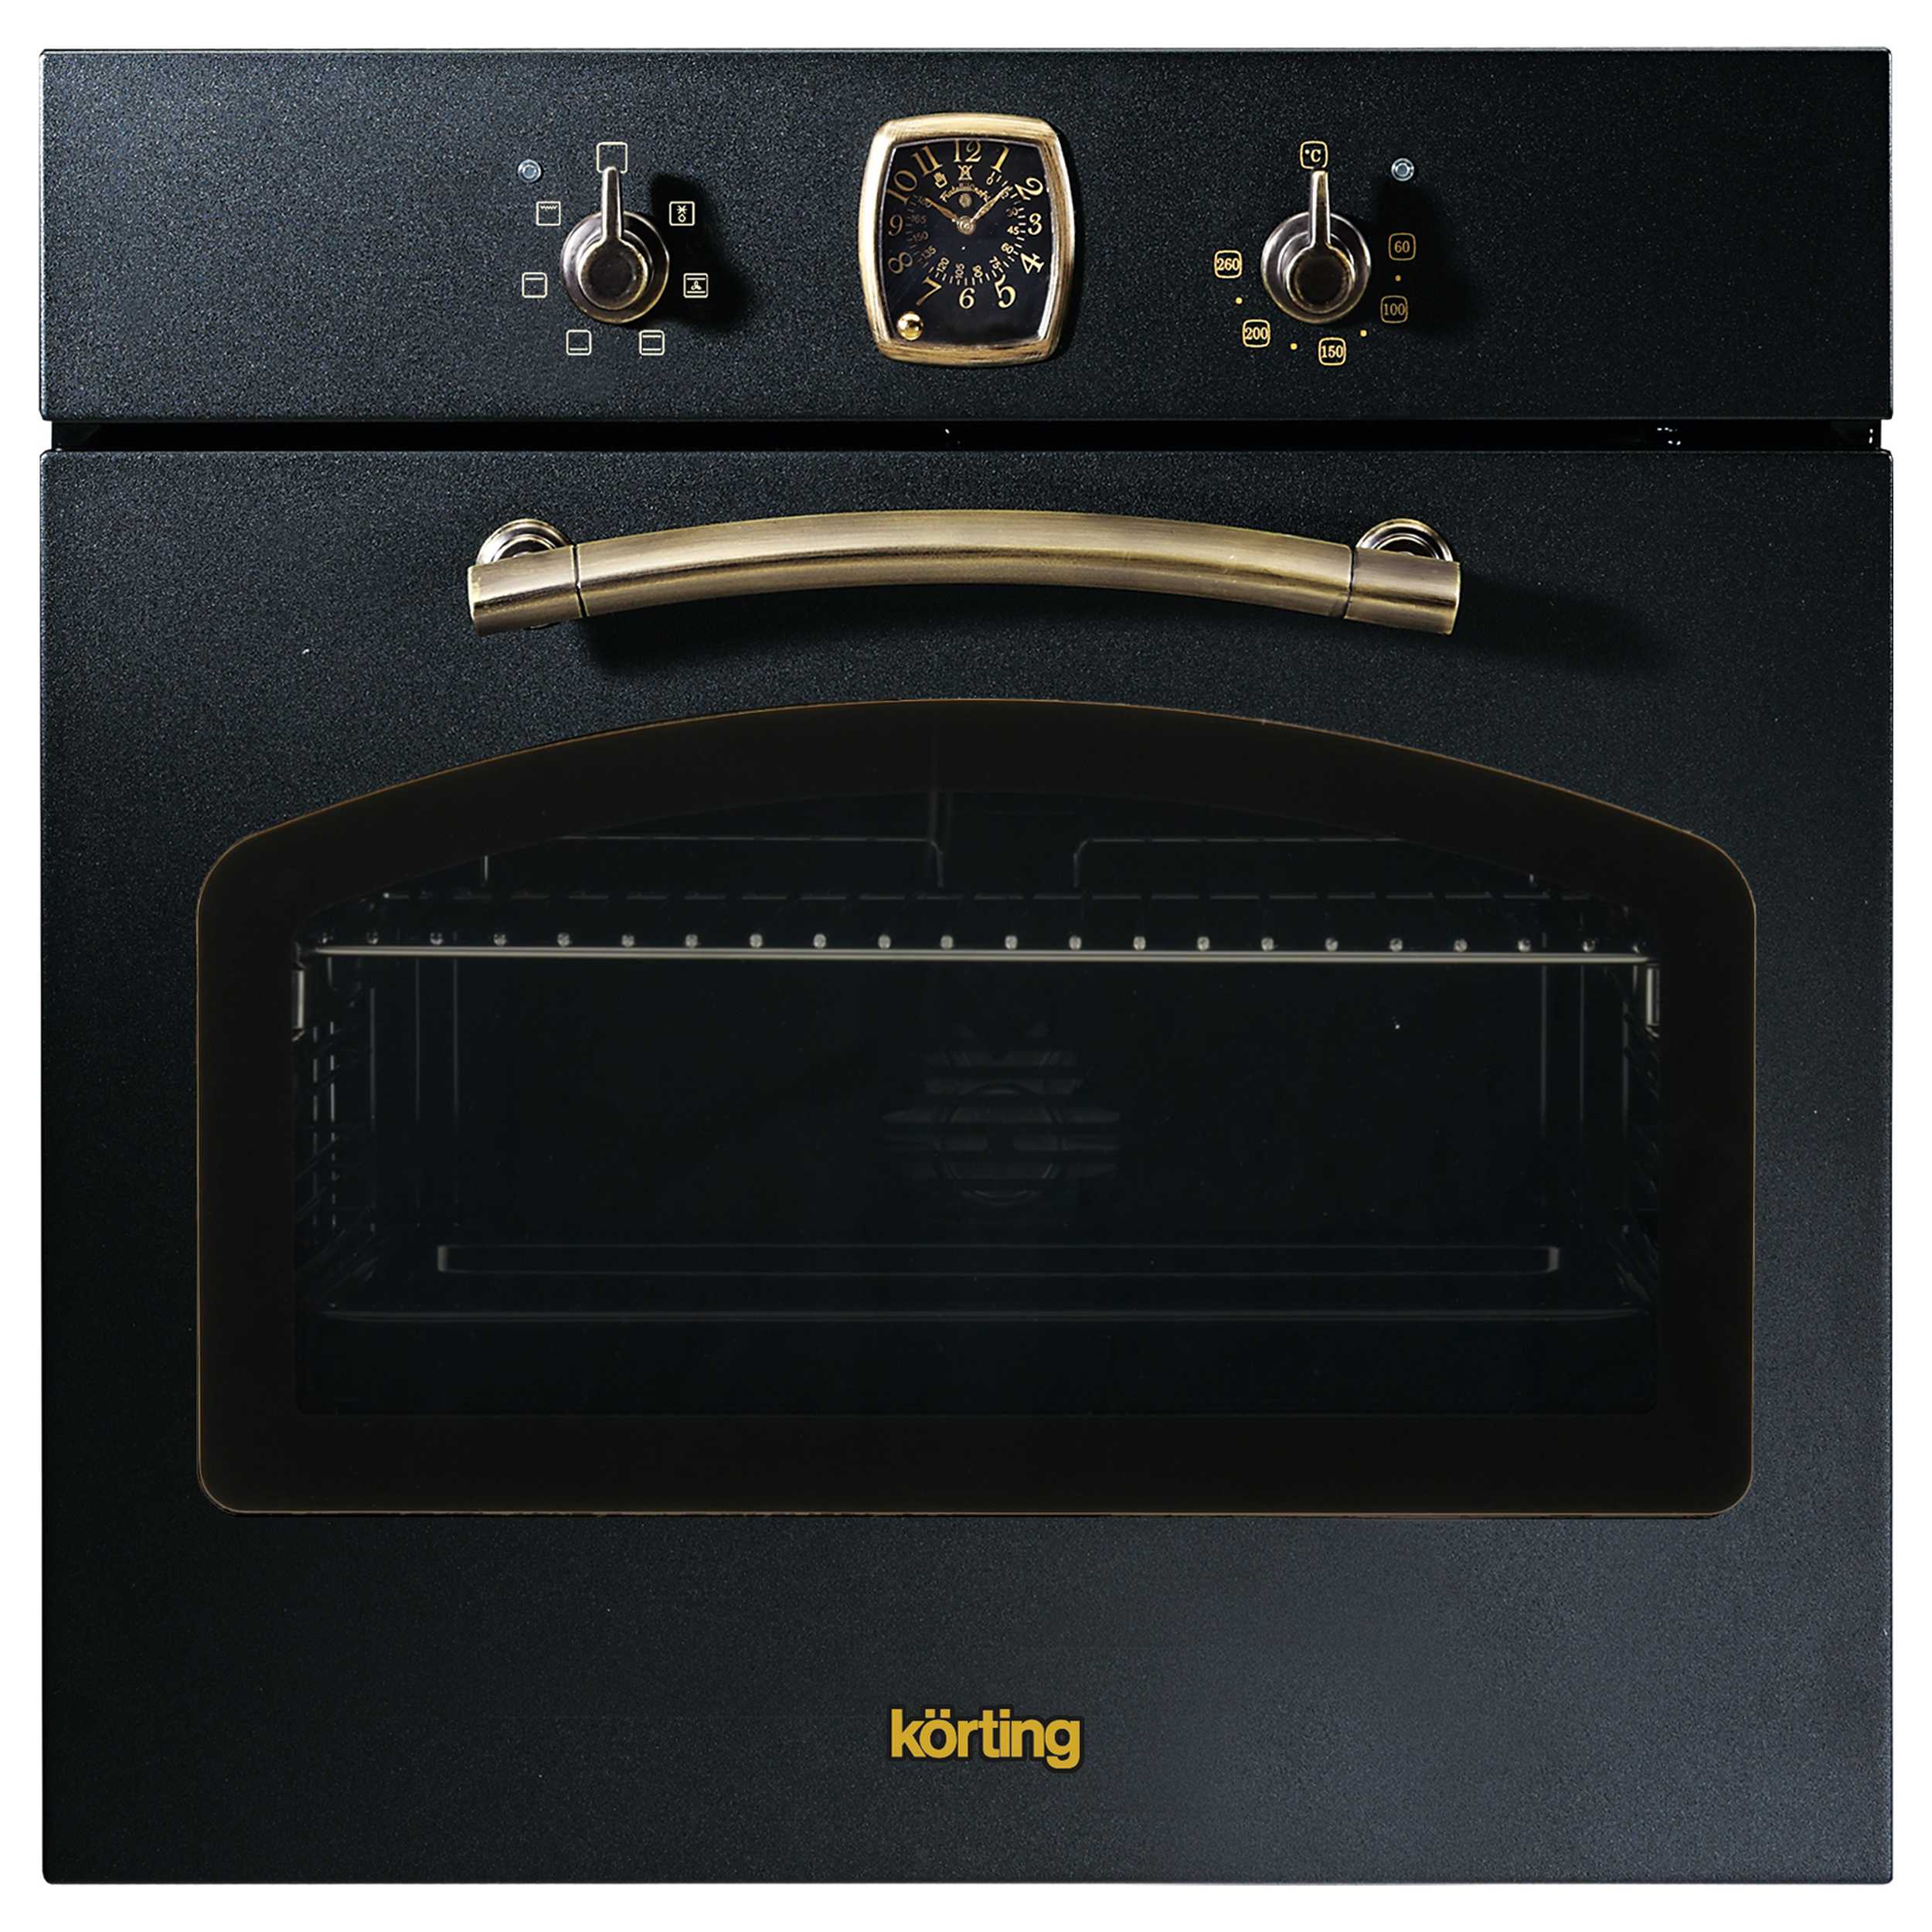 Встраиваемый электрический духовой шкаф Korting OKB 460 RN черный, золотистый смарт часы ara b19 золотистый золотистый 3215420